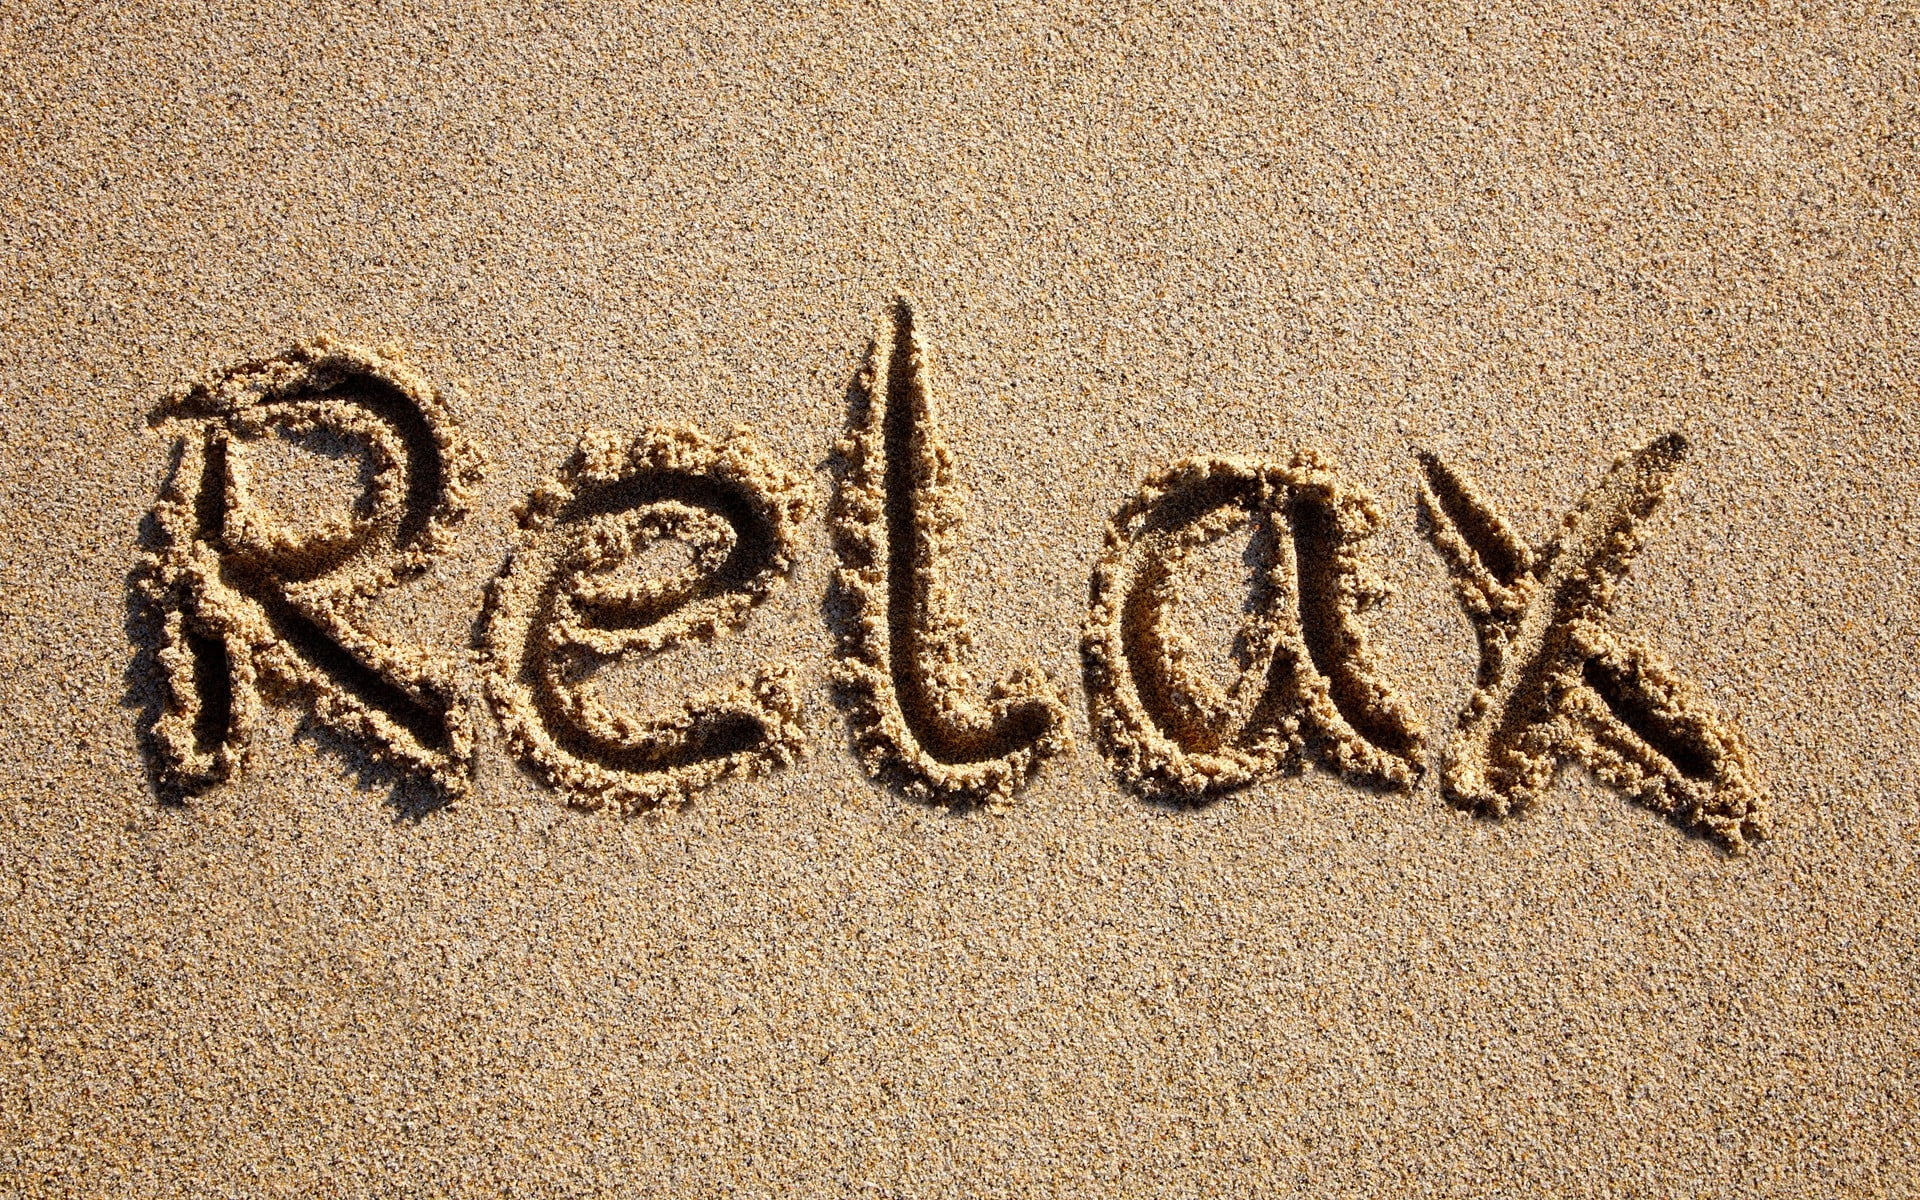 1920x1200 Relax text on beach sand HD wallpaper